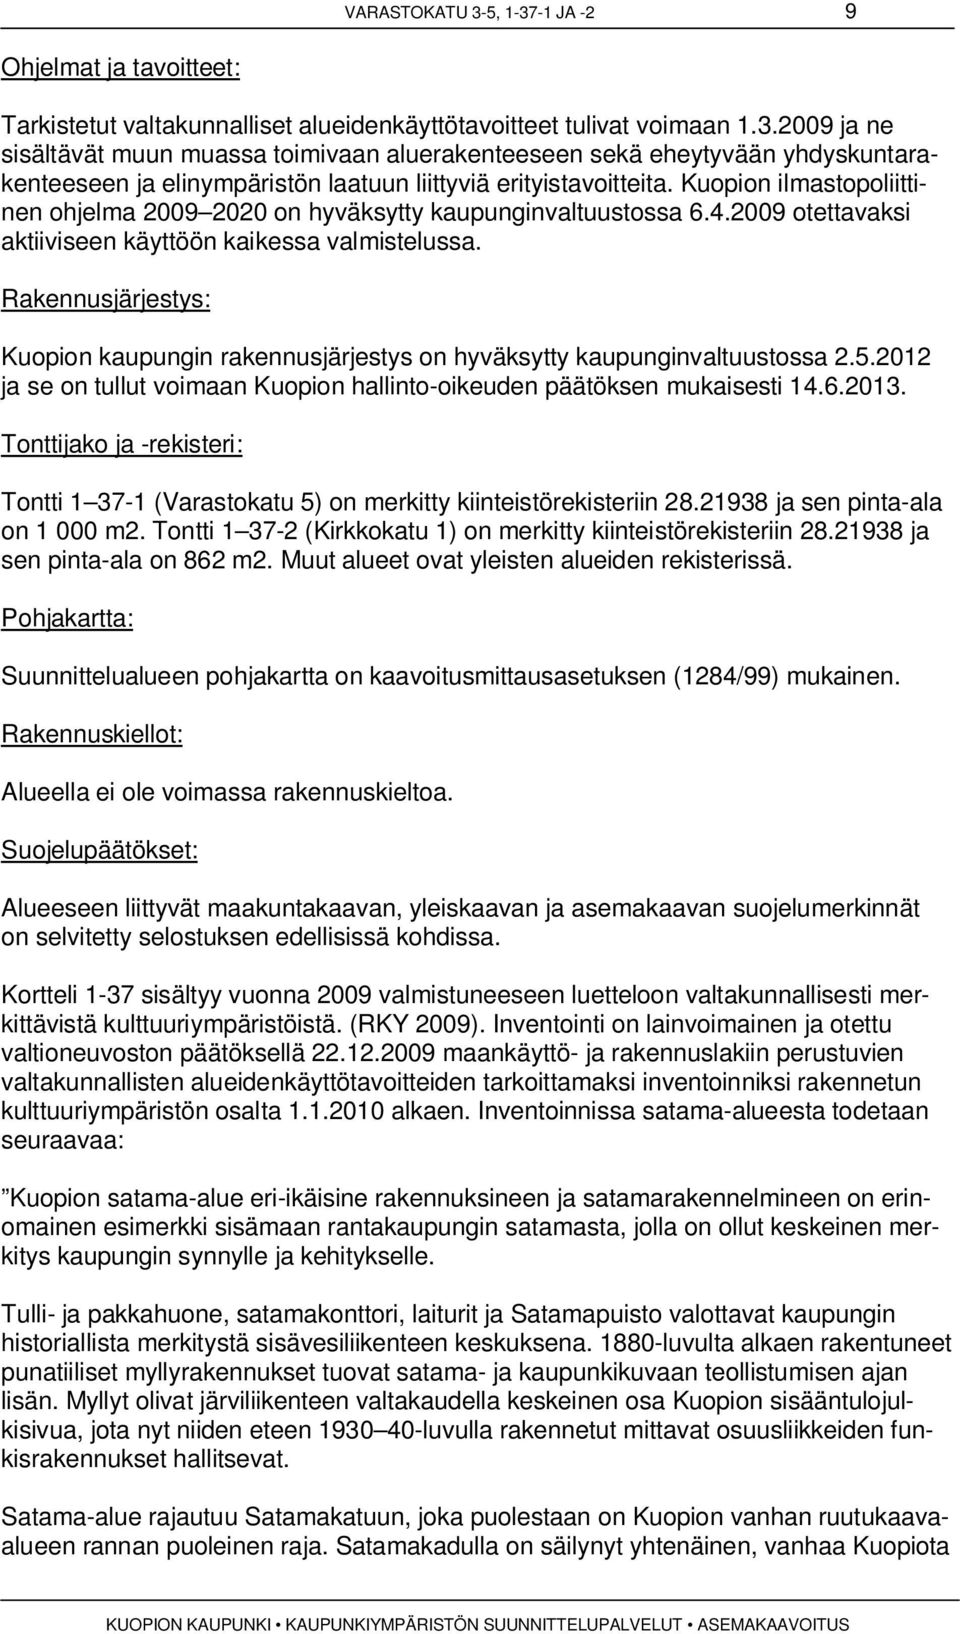 Rakennusjärjestys: Kuopion kaupungin rakennusjärjestys on hyväksytty kaupunginvaltuustossa 2.5.2012 ja se on tullut voimaan Kuopion hallinto-oikeuden päätöksen mukaisesti 14.6.2013.